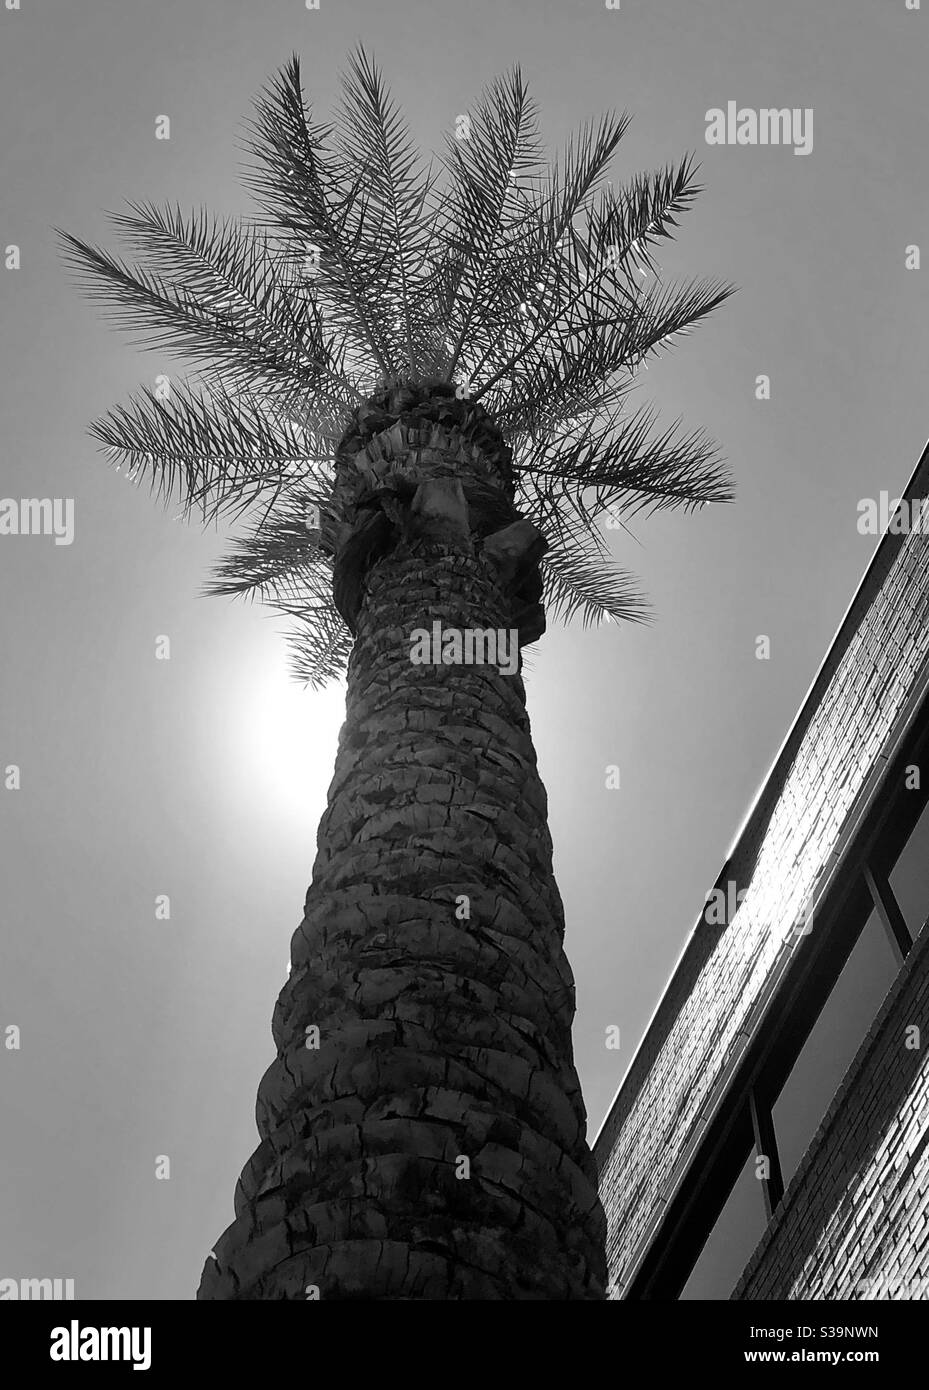 Schwarz/weiß, nach oben geneigt, hohe Palme, Wedel, die eine Krone bilden, Baumspitze, Sonne hinter Ihnen, an den Seiten glühend, Teilgebäude, Reihe von Fenstern, Seitenwinkel, Kopierraum, Natur neben dem Menschen gemacht Stockfoto